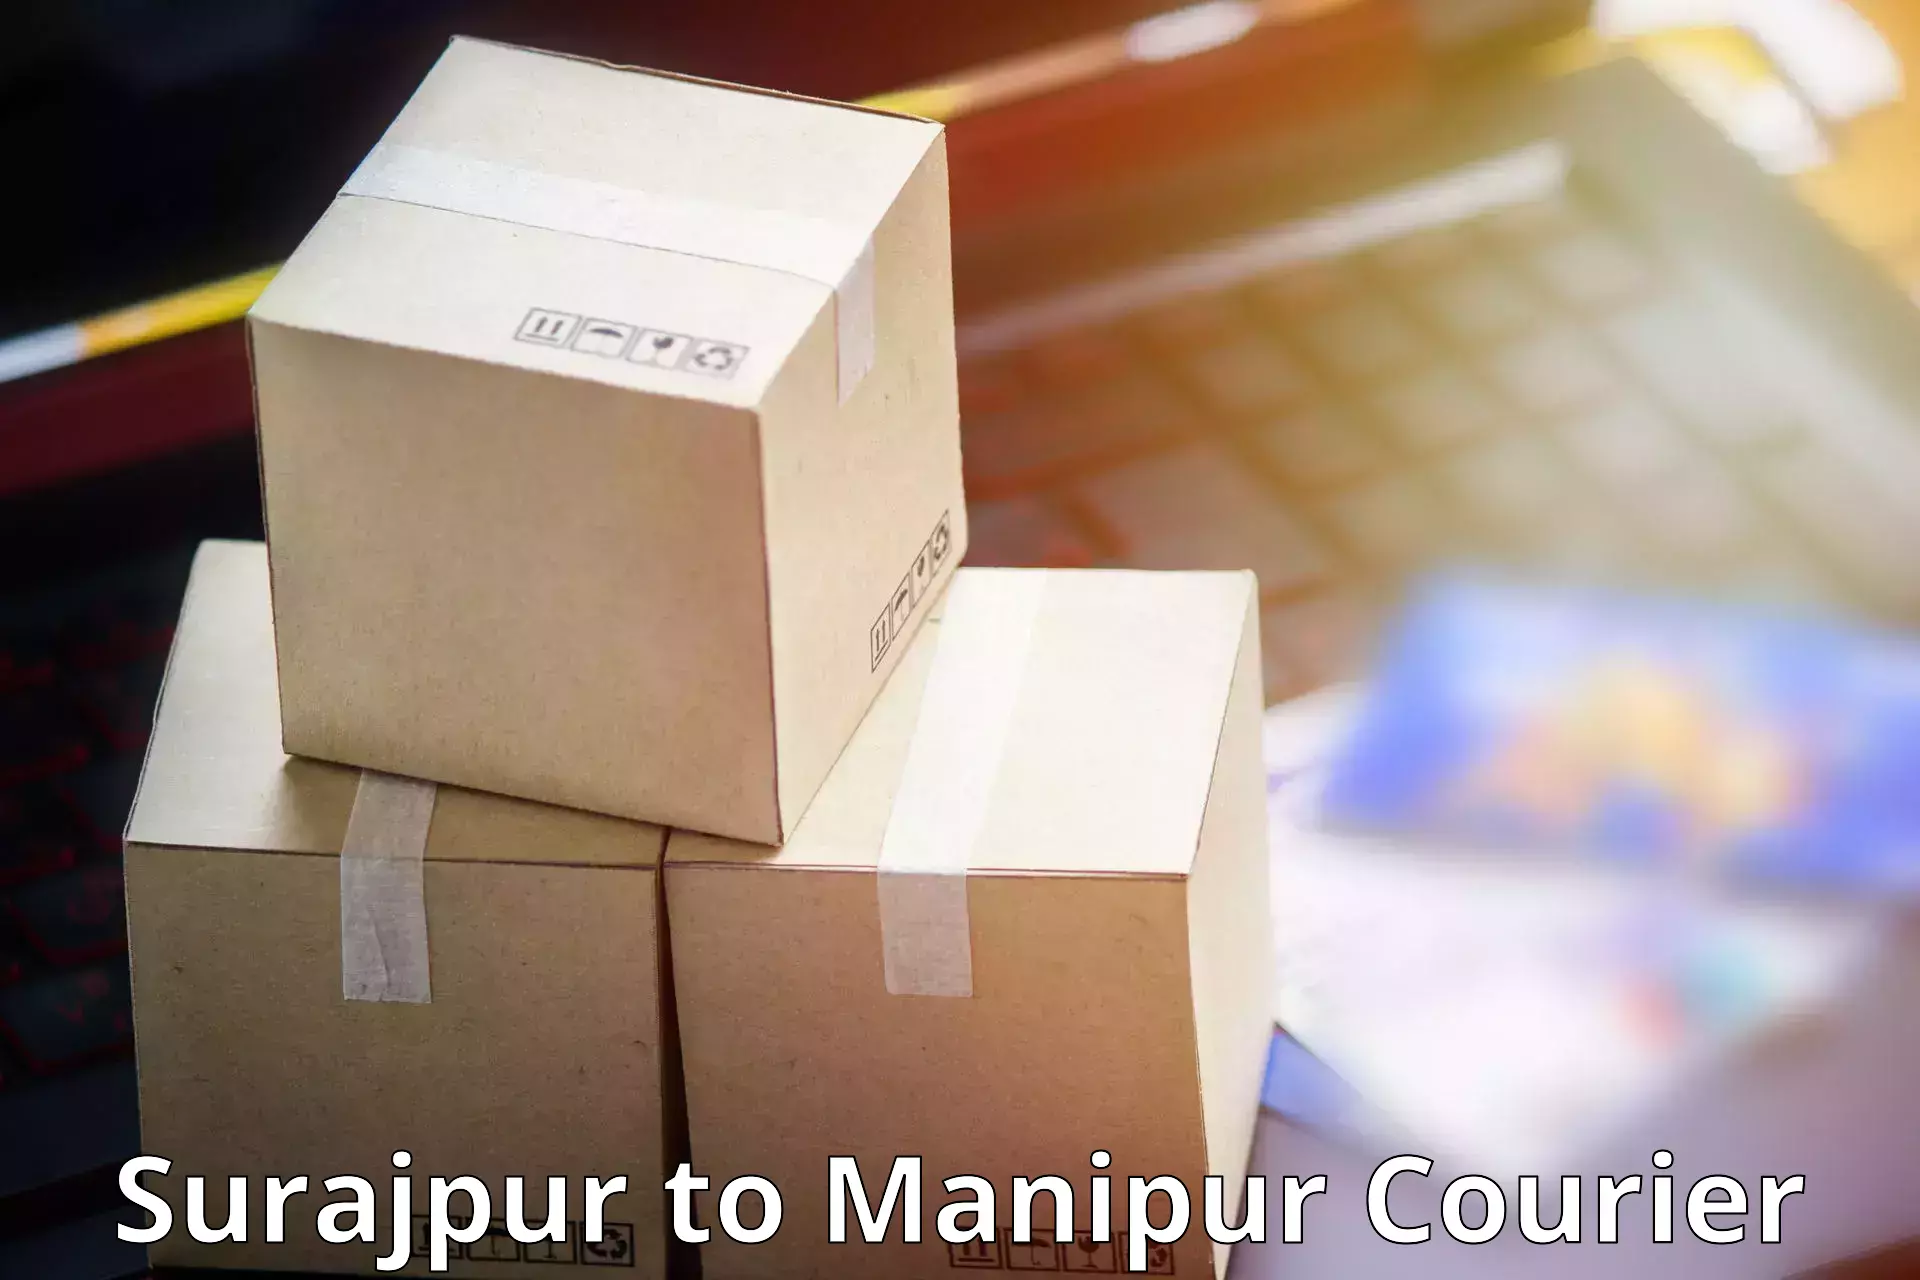 Urban courier service Surajpur to IIIT Senapati